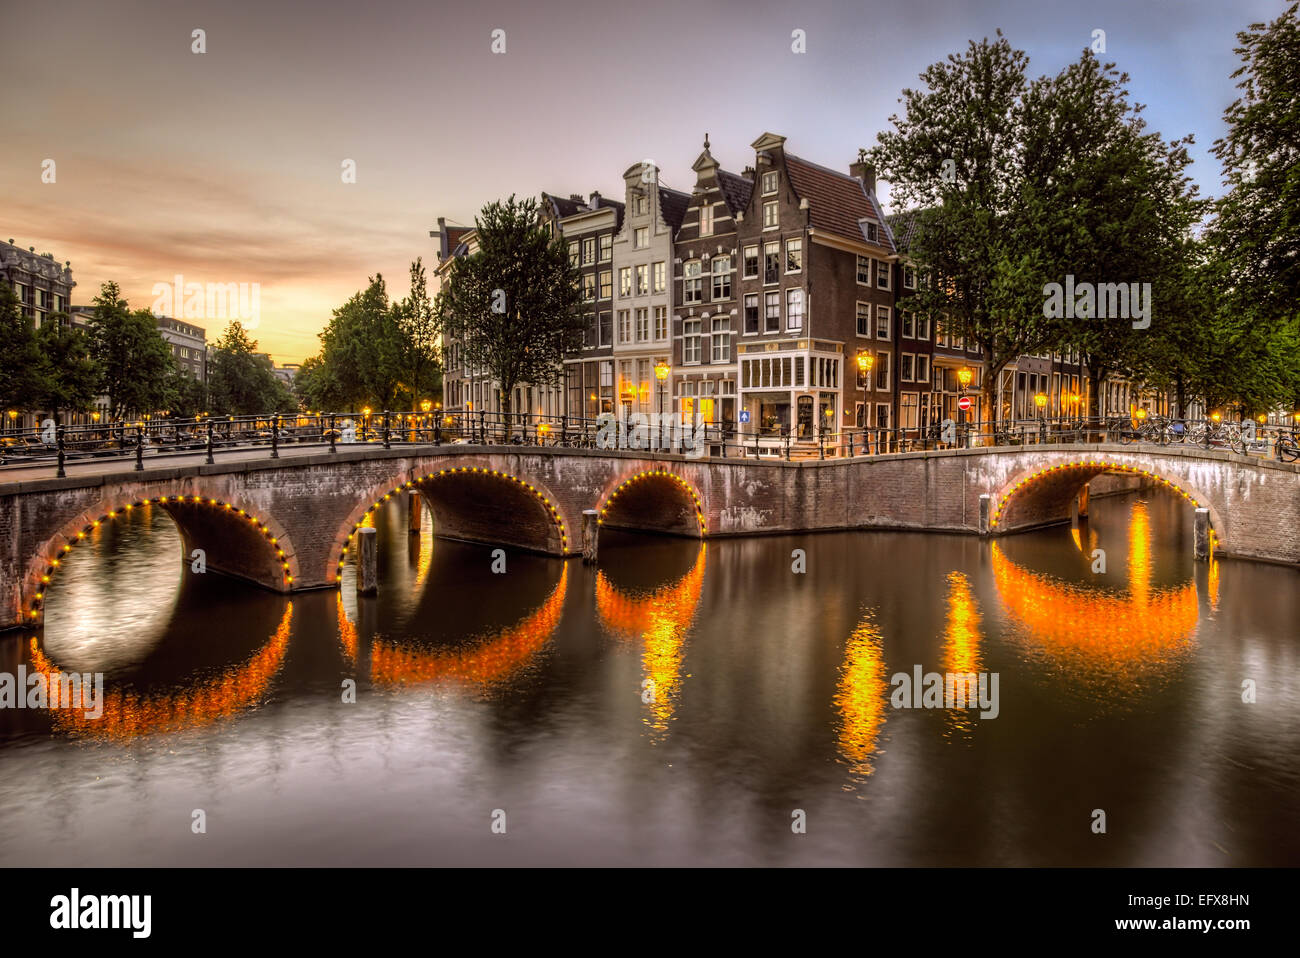 Beleuchtete Bogenbrücken gegossen leuchtende Reflexionen auf den Grachten in Amsterdam, Niederlande-Hervorhebung der markanten Architektur Stockfoto